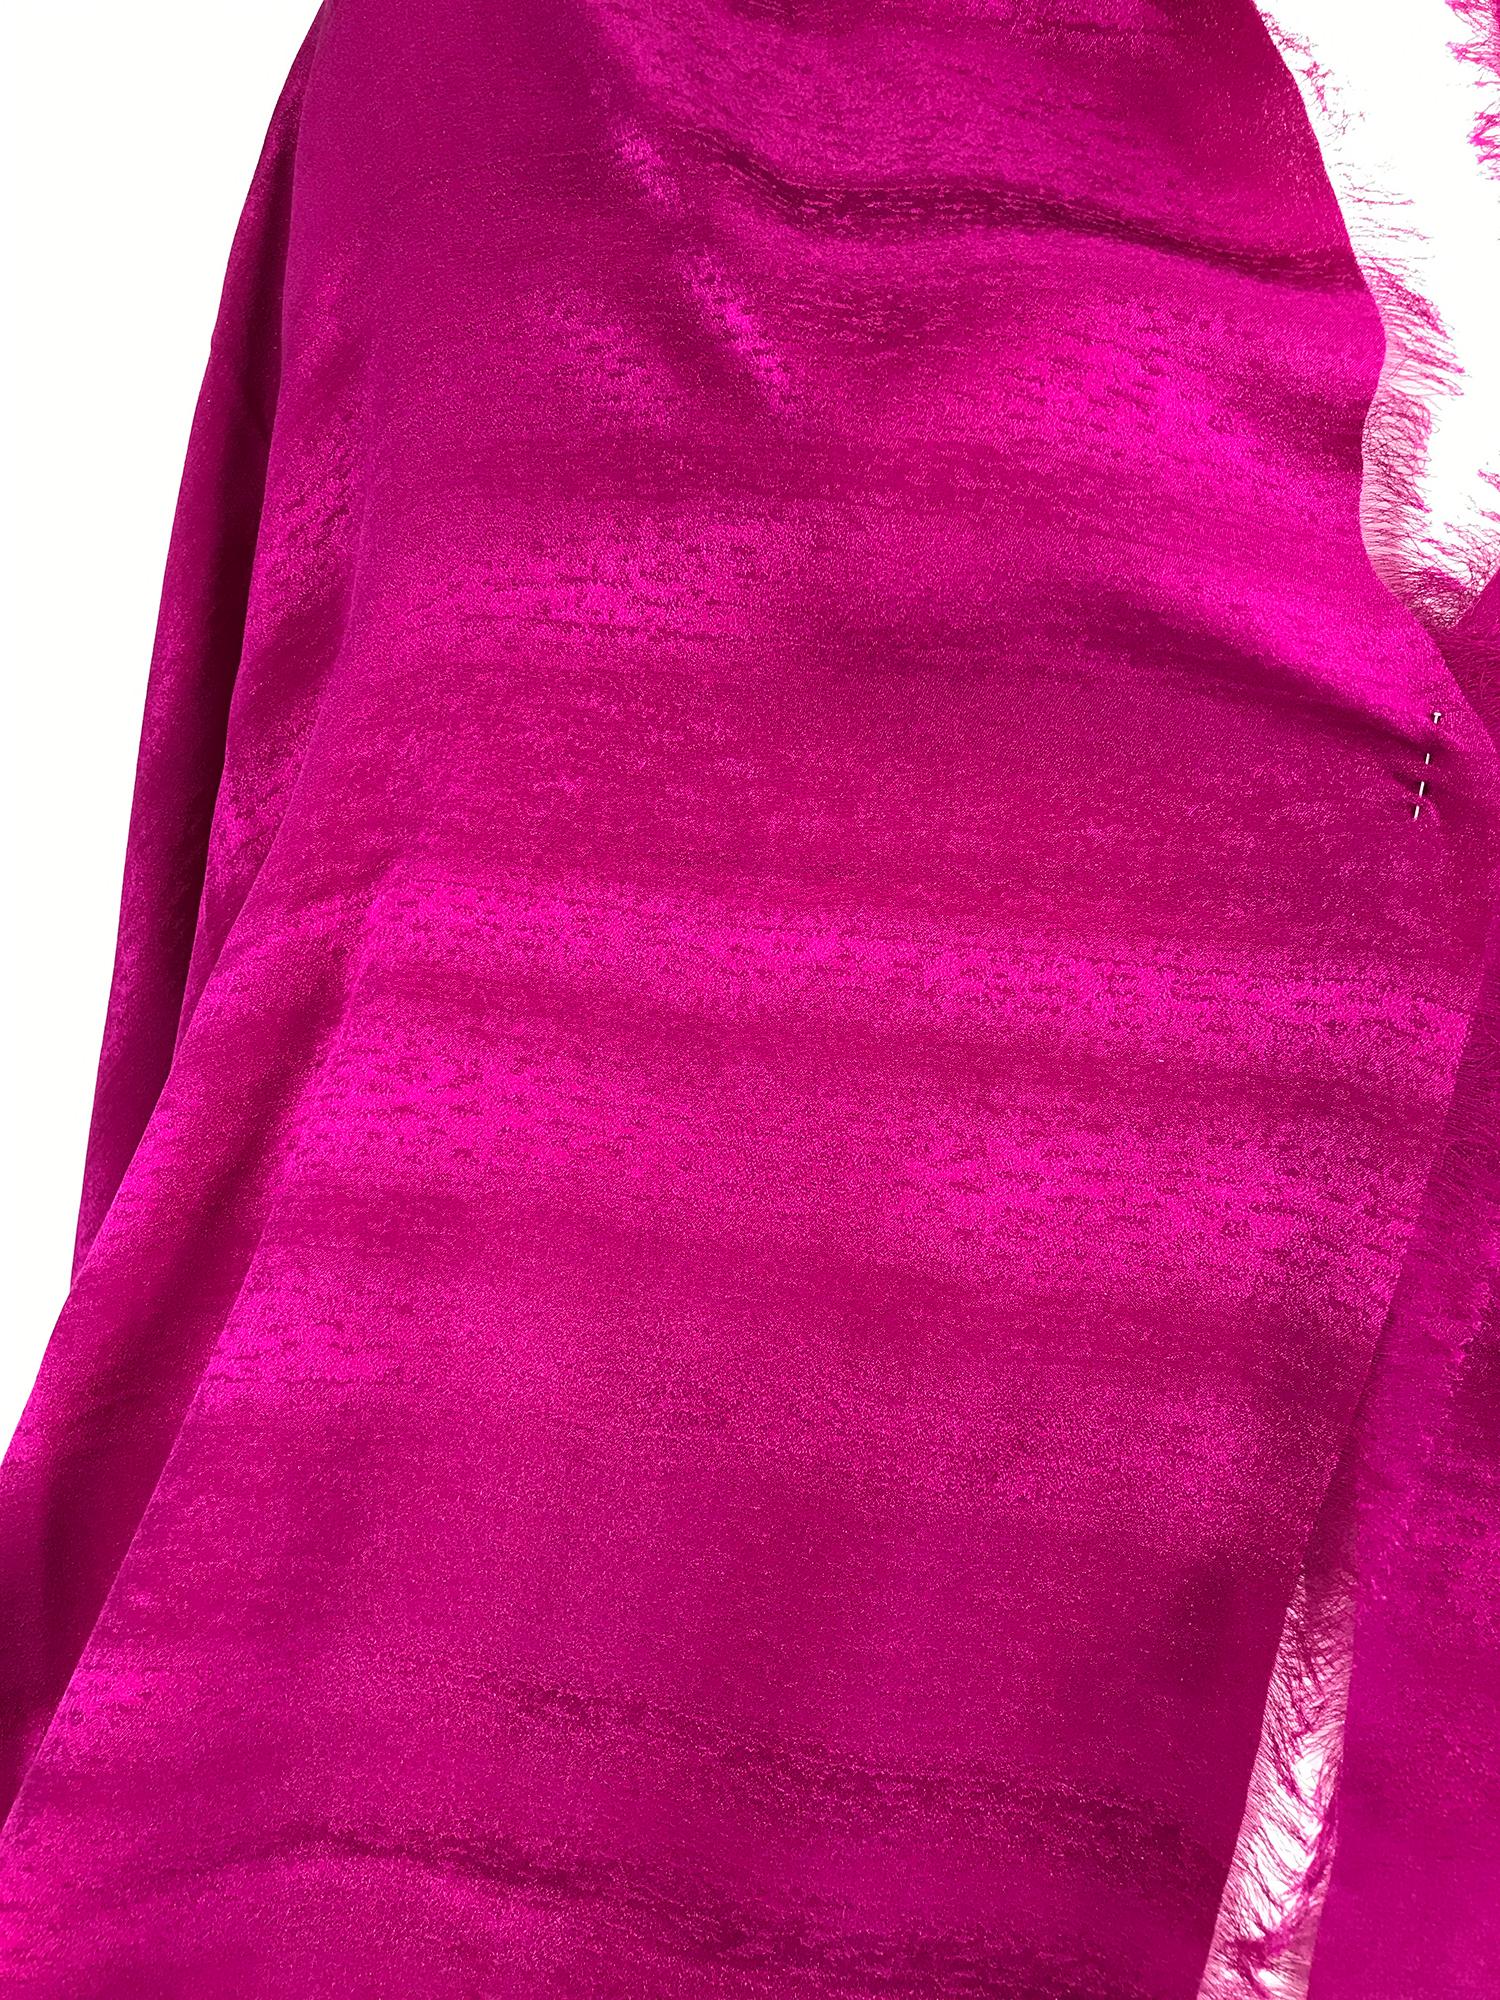 Gucci magentafarbener Seidenjacquard-Schal in X-Länge und mit Fransen.  Dieser schöne Schal ist in Pantones Farbe des Jahres 2023, Magenta, gehalten. Ob als Schal oder Halstuch, die Seide besticht durch ein dezentes Webmuster. Sieht kaum, wenn